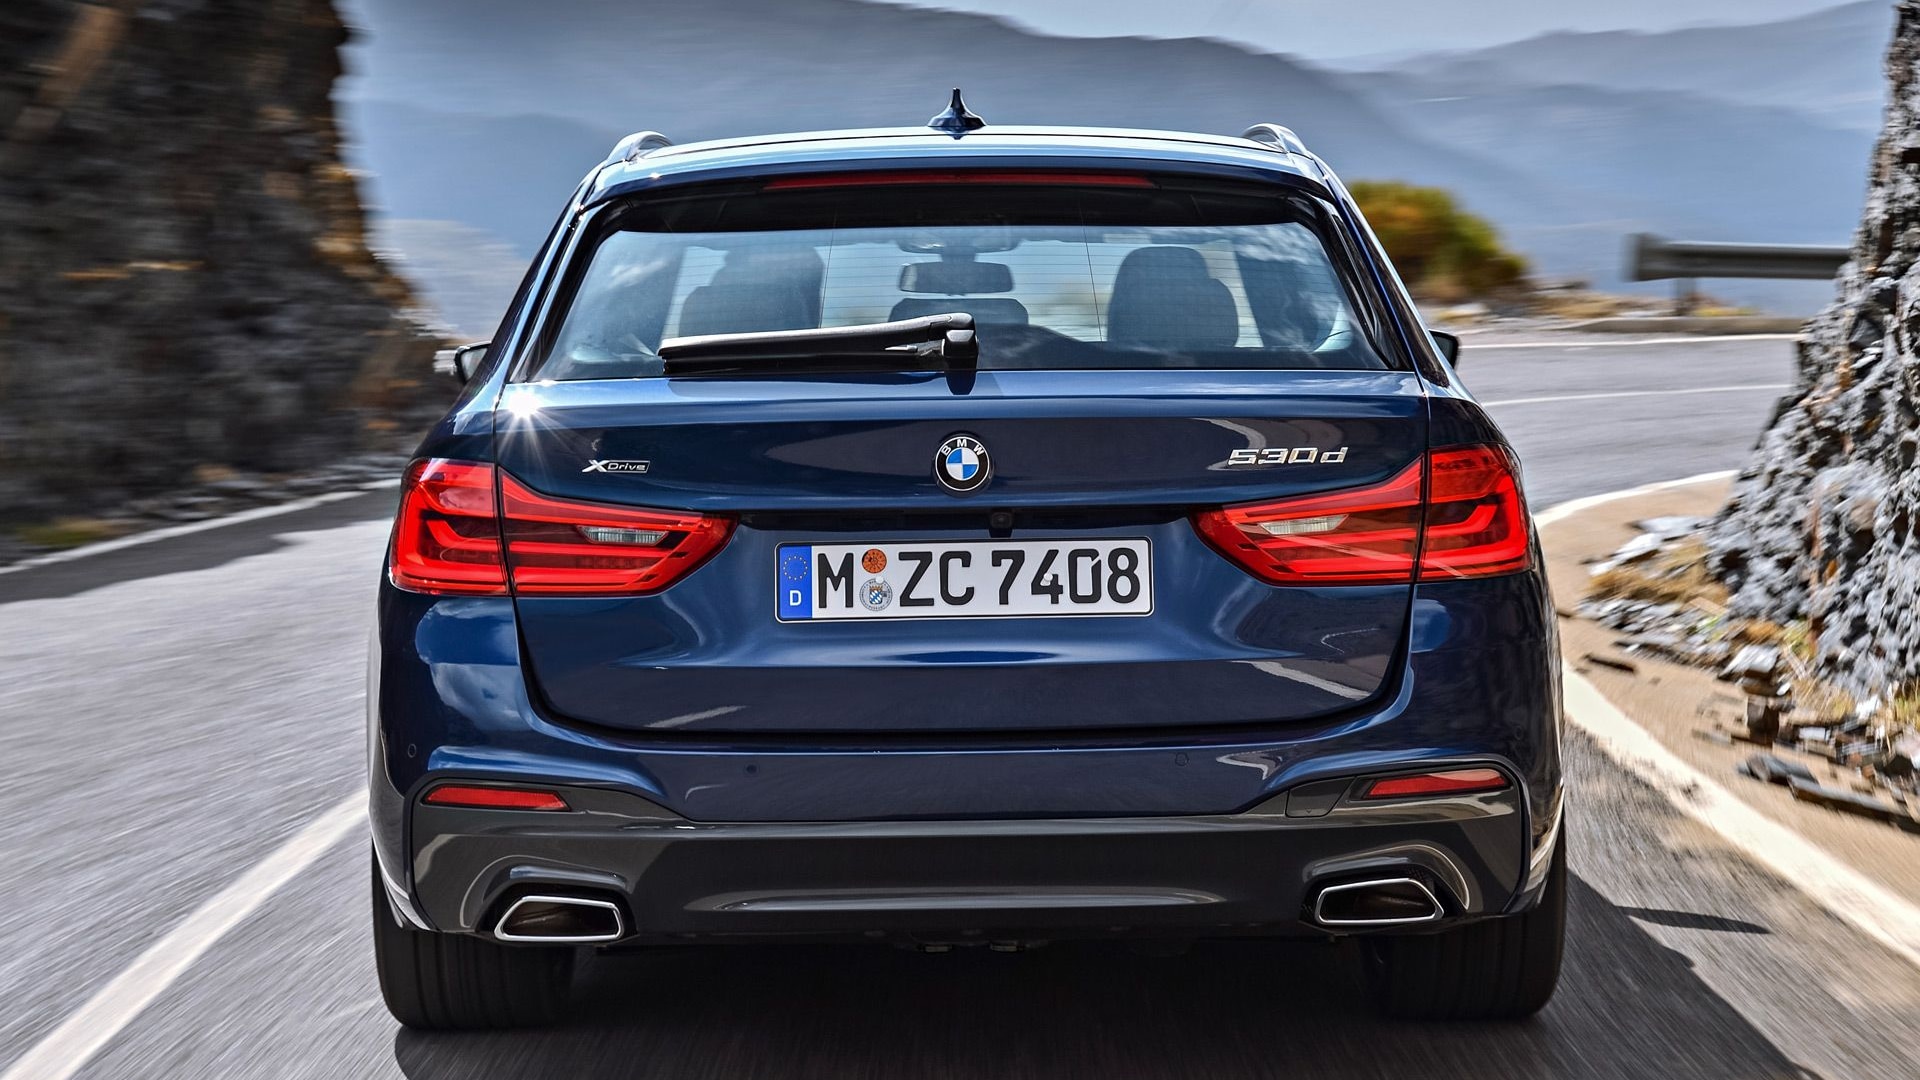 2017 BMW 5-Series Touring